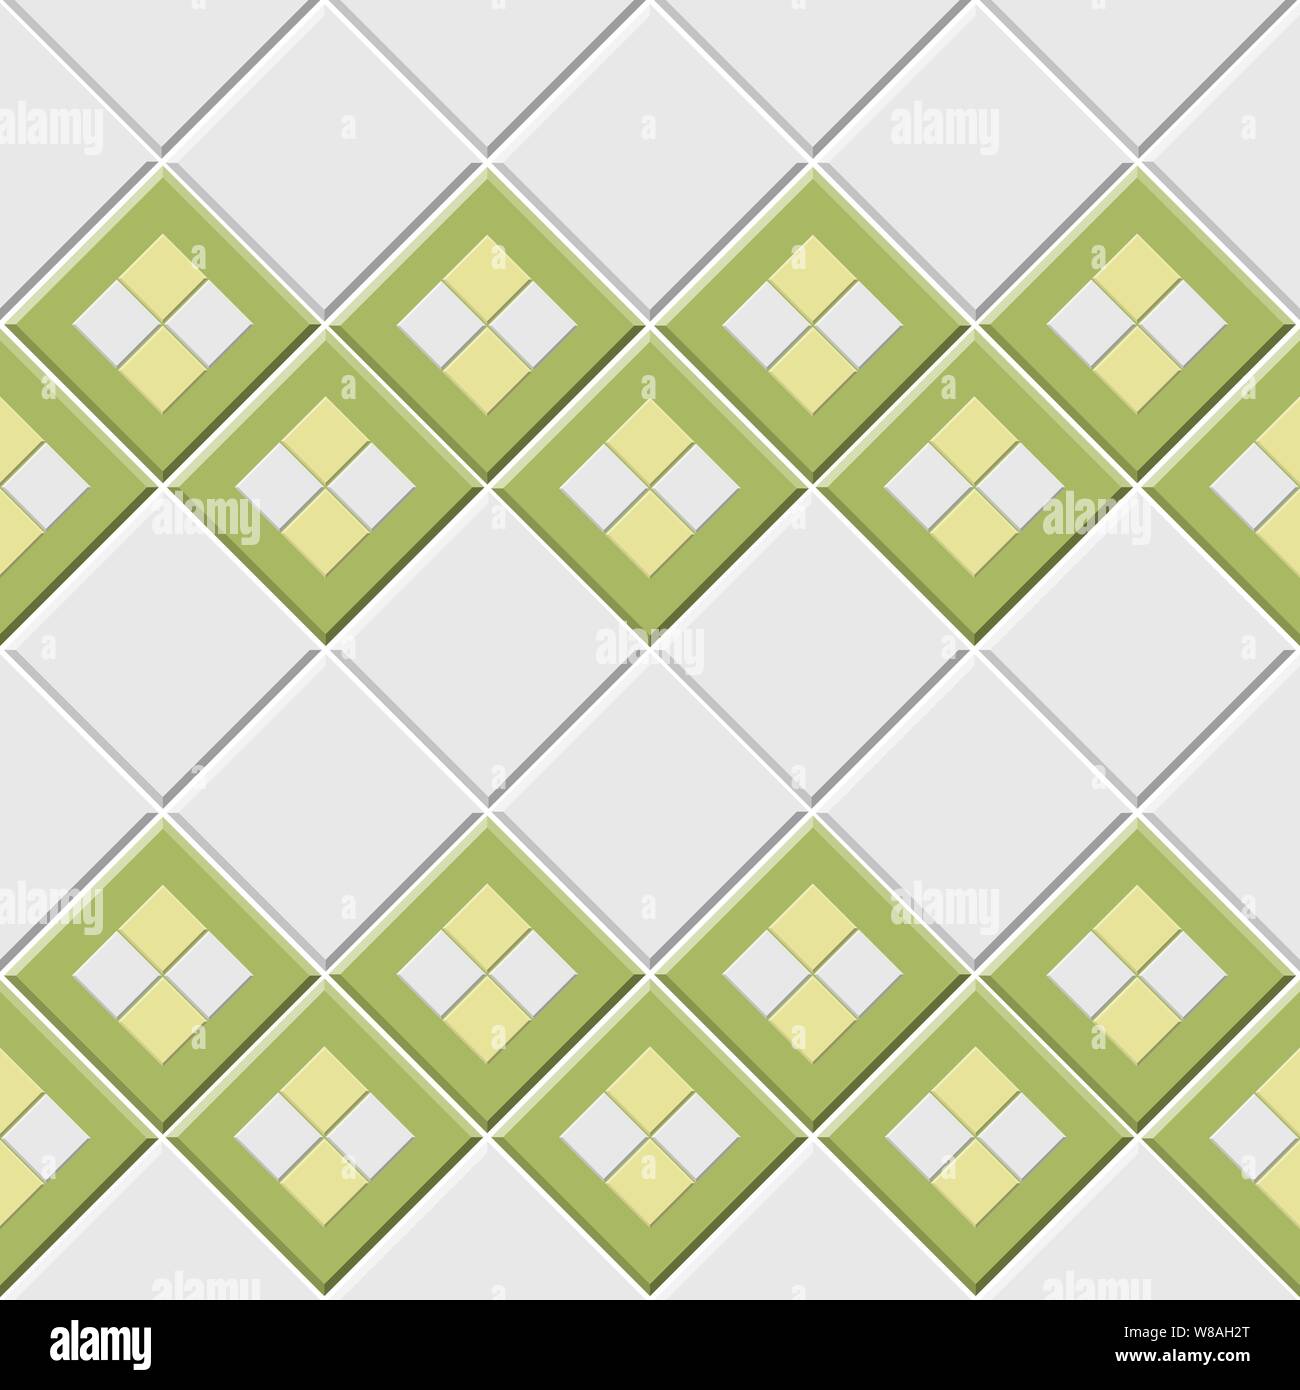 Résumé motif transparent, vert blanc carreaux de céramique mur avec la forme en diamant vector illustration Illustration de Vecteur